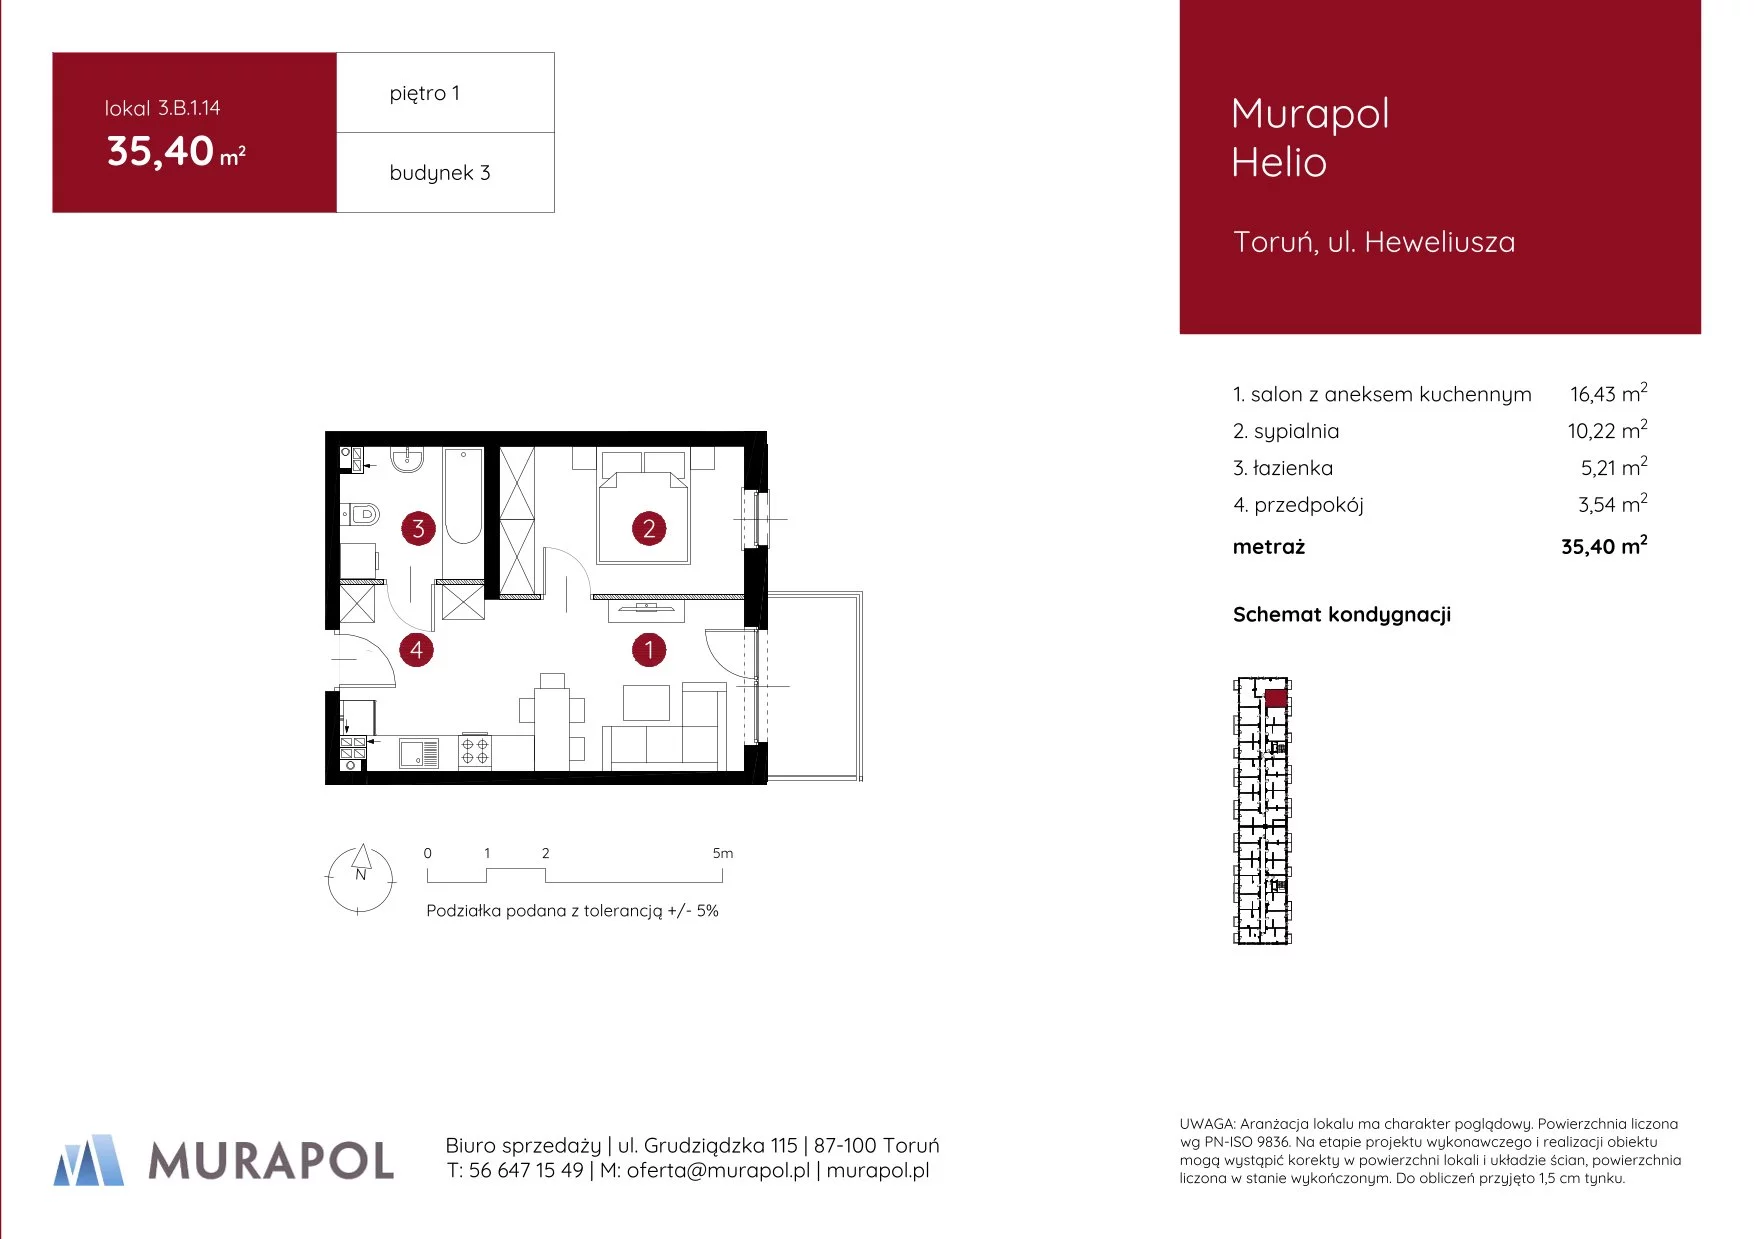 Mieszkanie 35,40 m², piętro 1, oferta nr 3.B.1.14, Murapol Helio, Toruń, Wrzosy, JAR, ul. Heweliusza